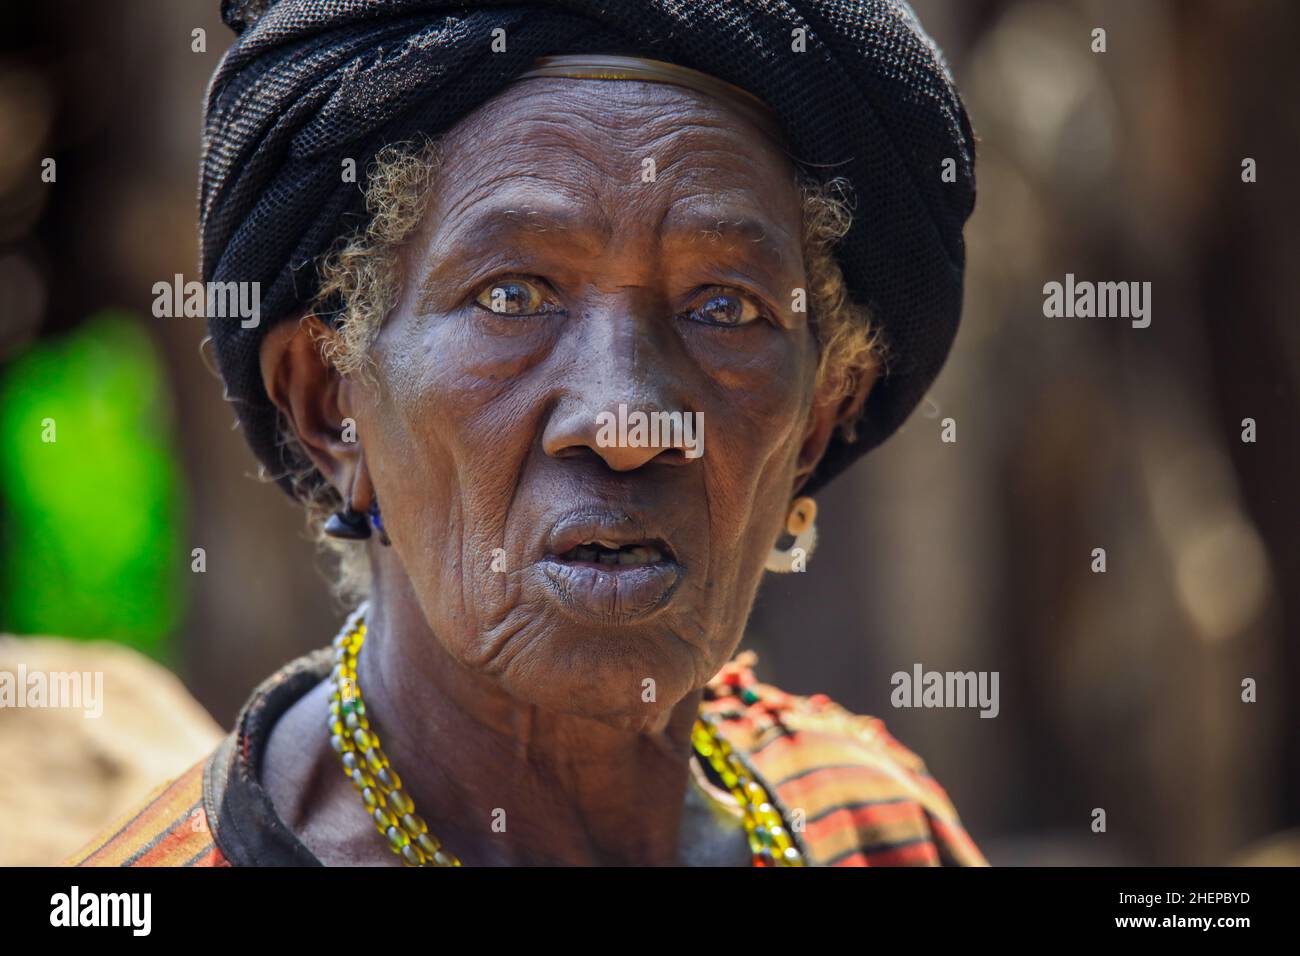 Portrait en gros plan de la vieille femme Konso africaine authentique avec le turban noir et collier dans le village tribal local Banque D'Images